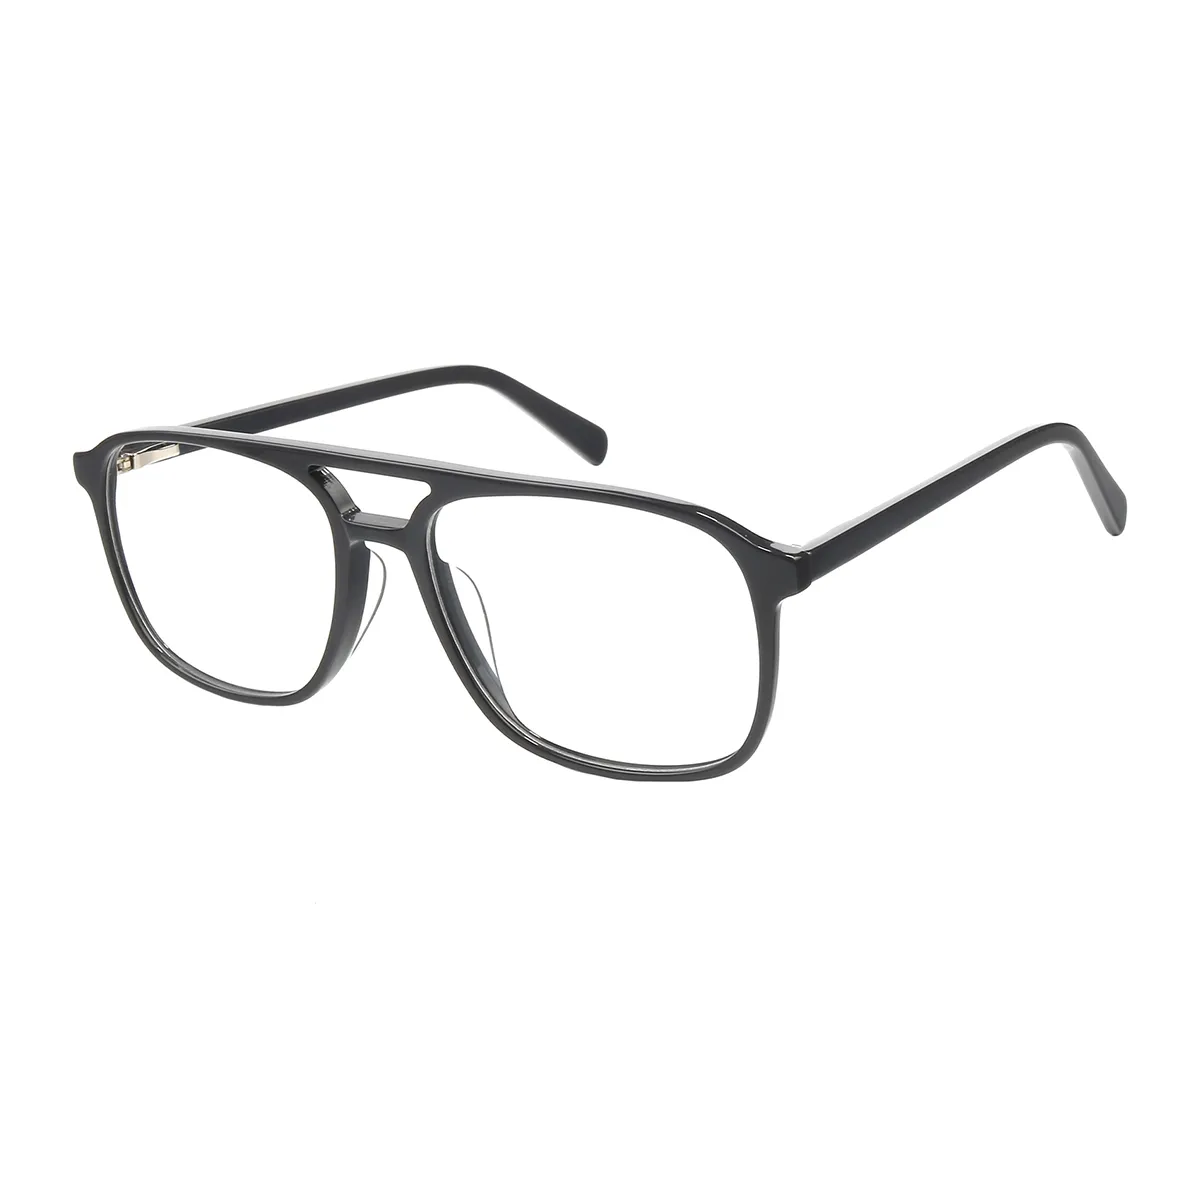 Dalton - Aviator Gray Glasses for Men